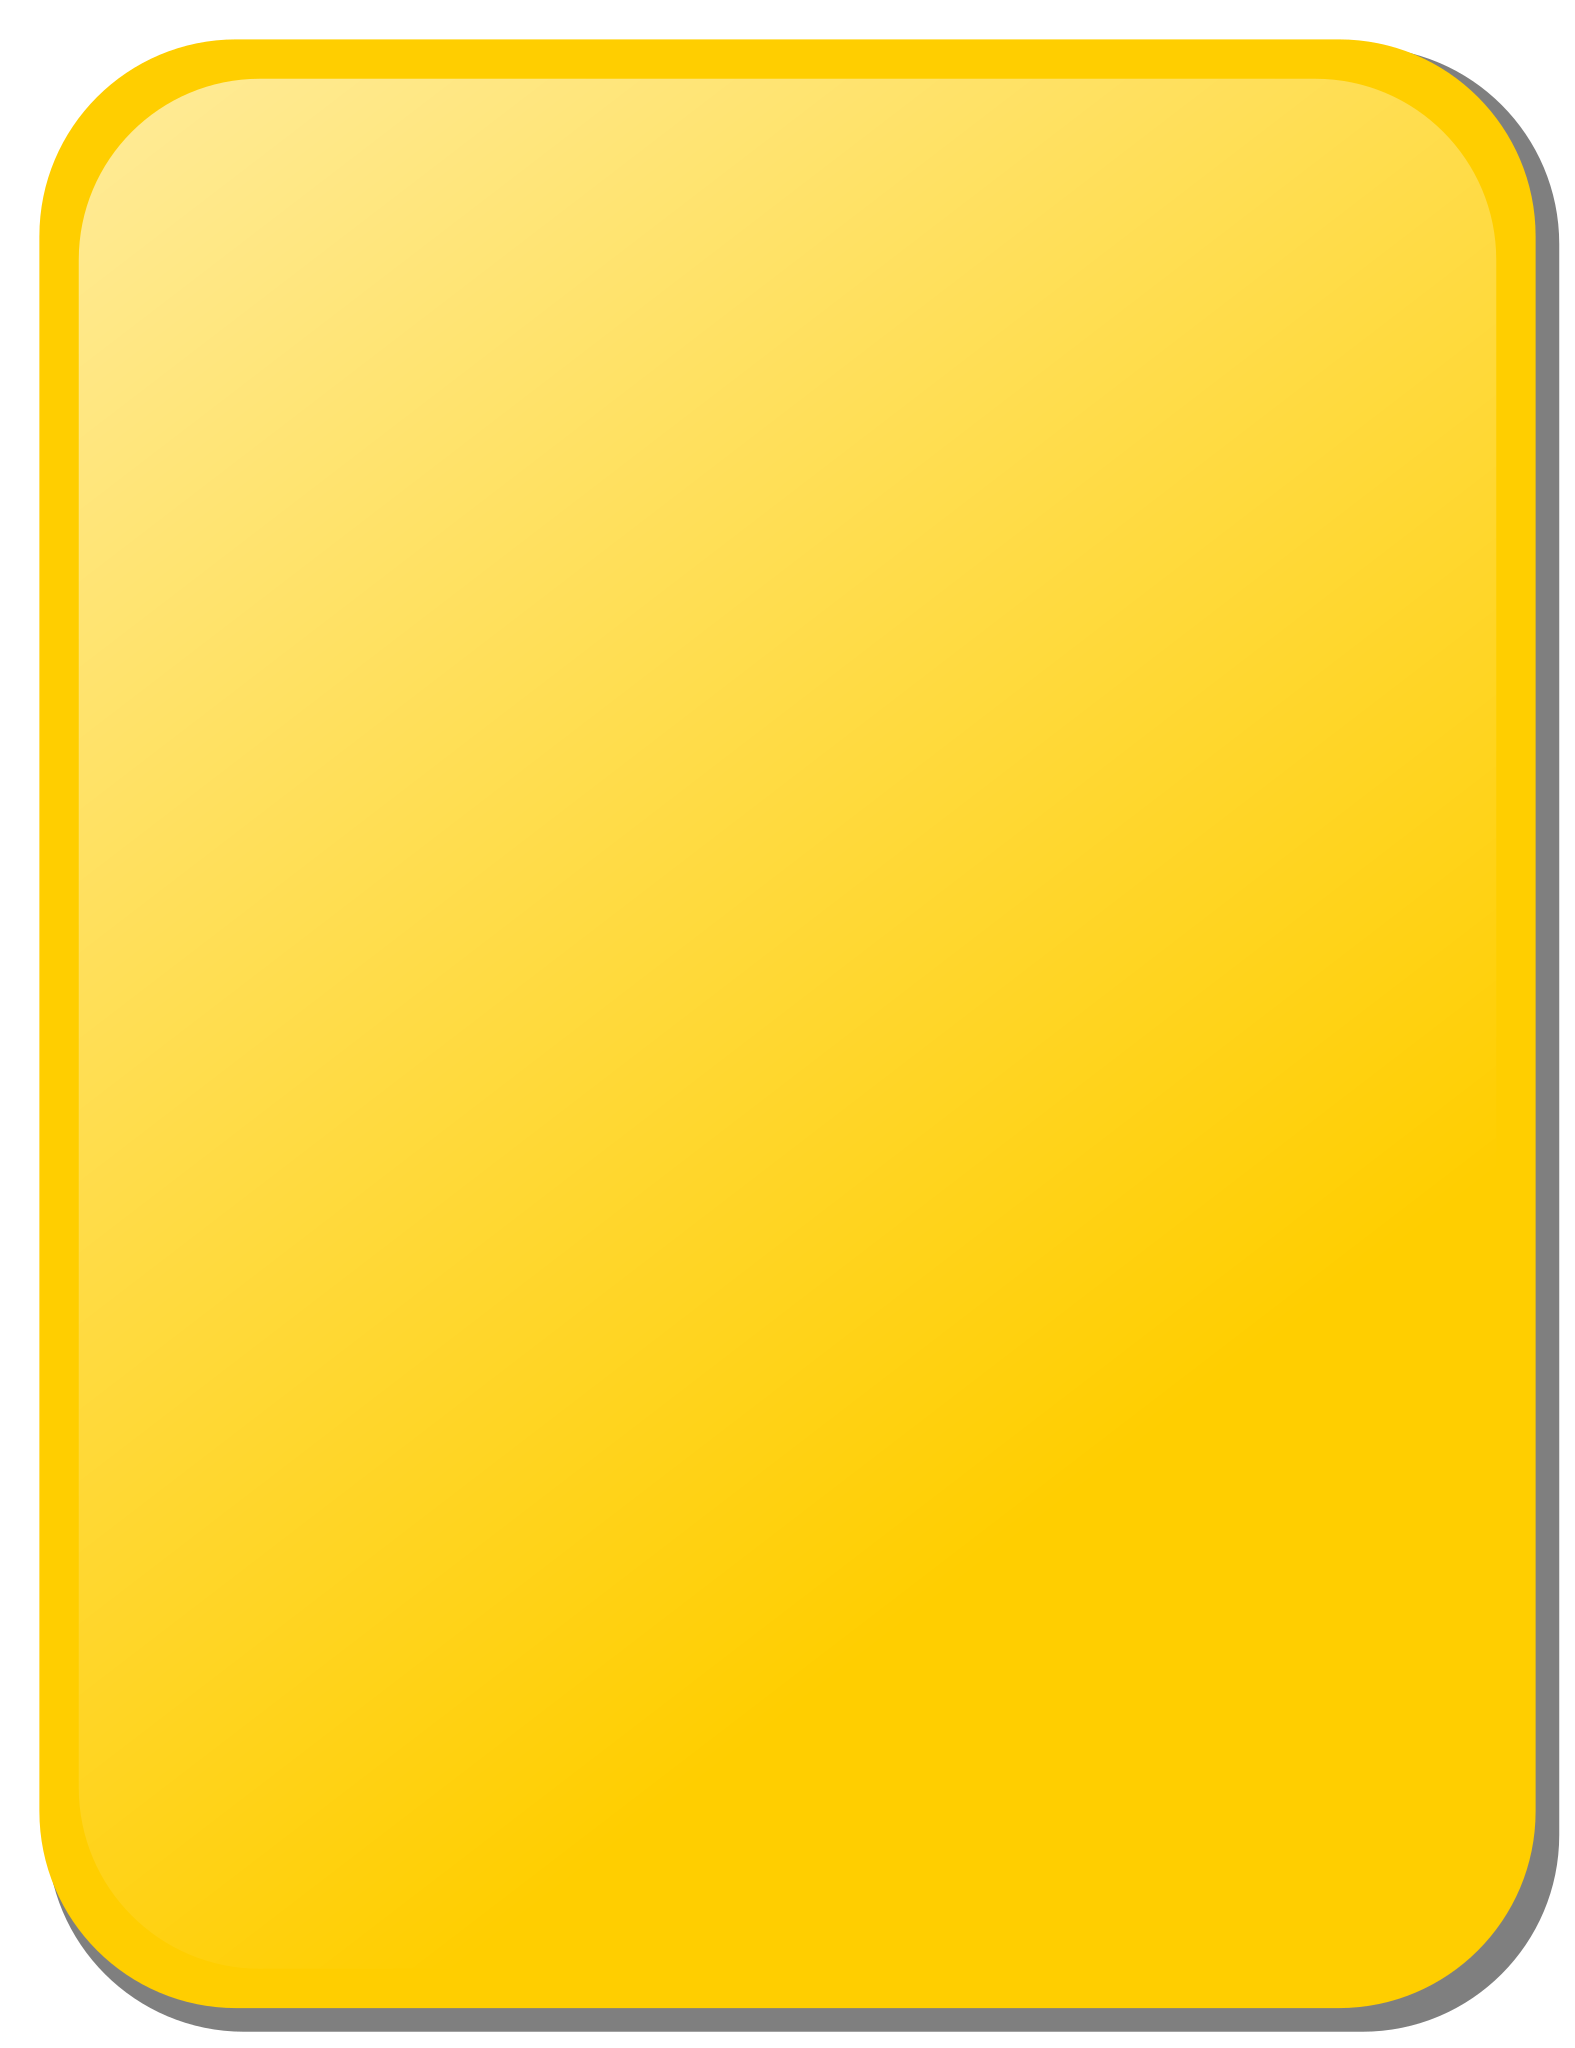 File:White card.svg - Wikipedia